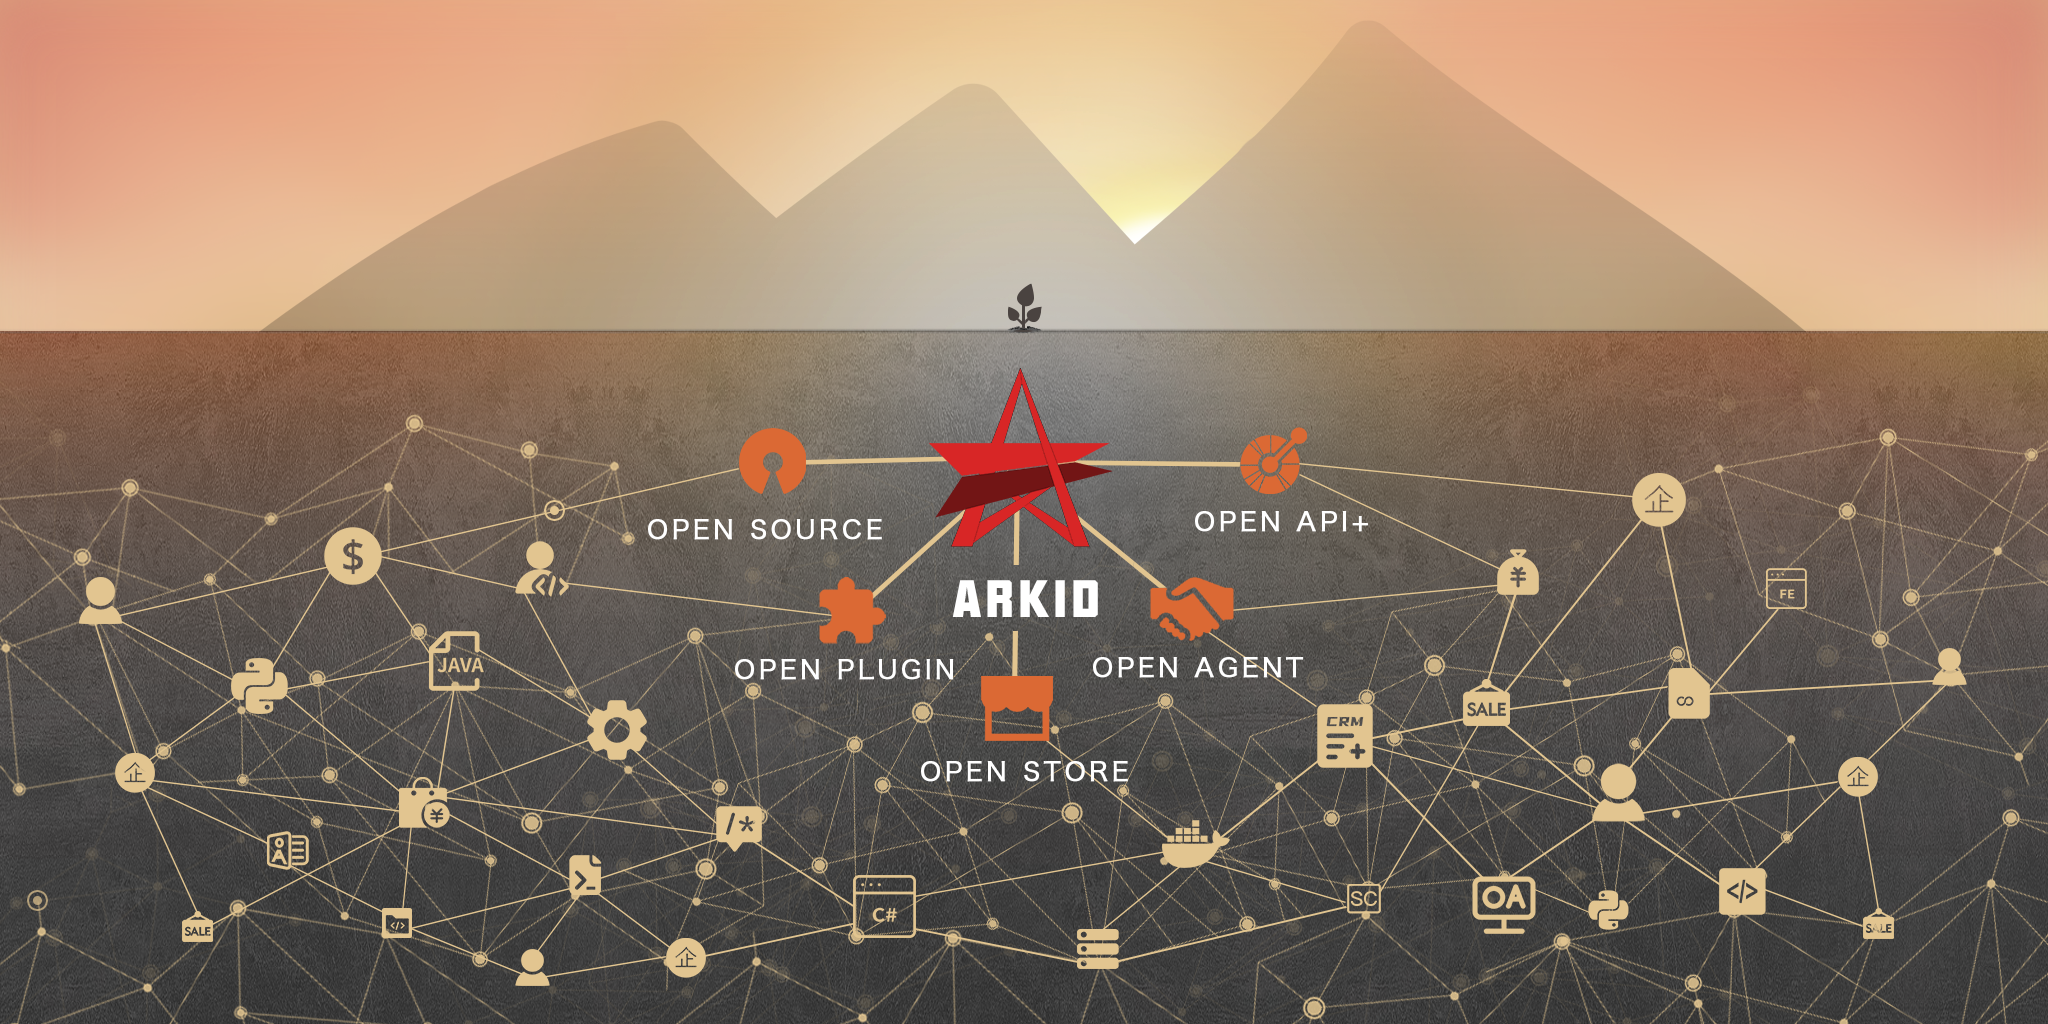 ArkID 企业级开源 IDaaS/IAM 统一身份认证授权管理解决方案